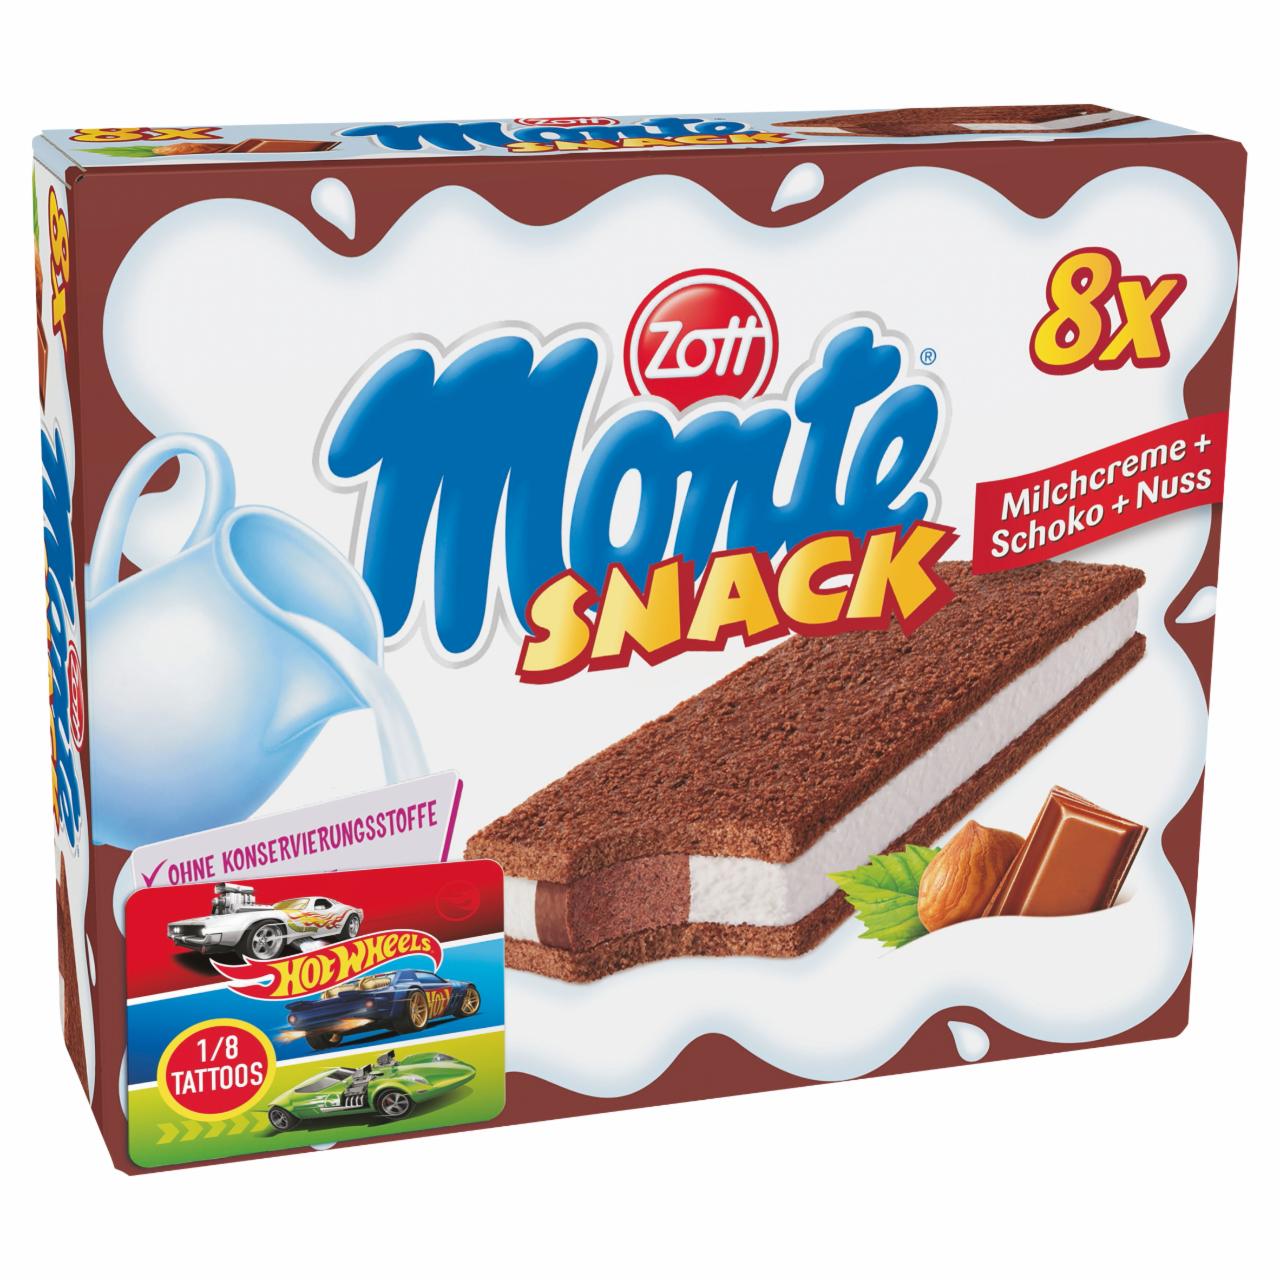 Képek - Zott Monte Snack tejes, csokoládés-mogyorós krémmel töltött sütemény 8 x 29 g